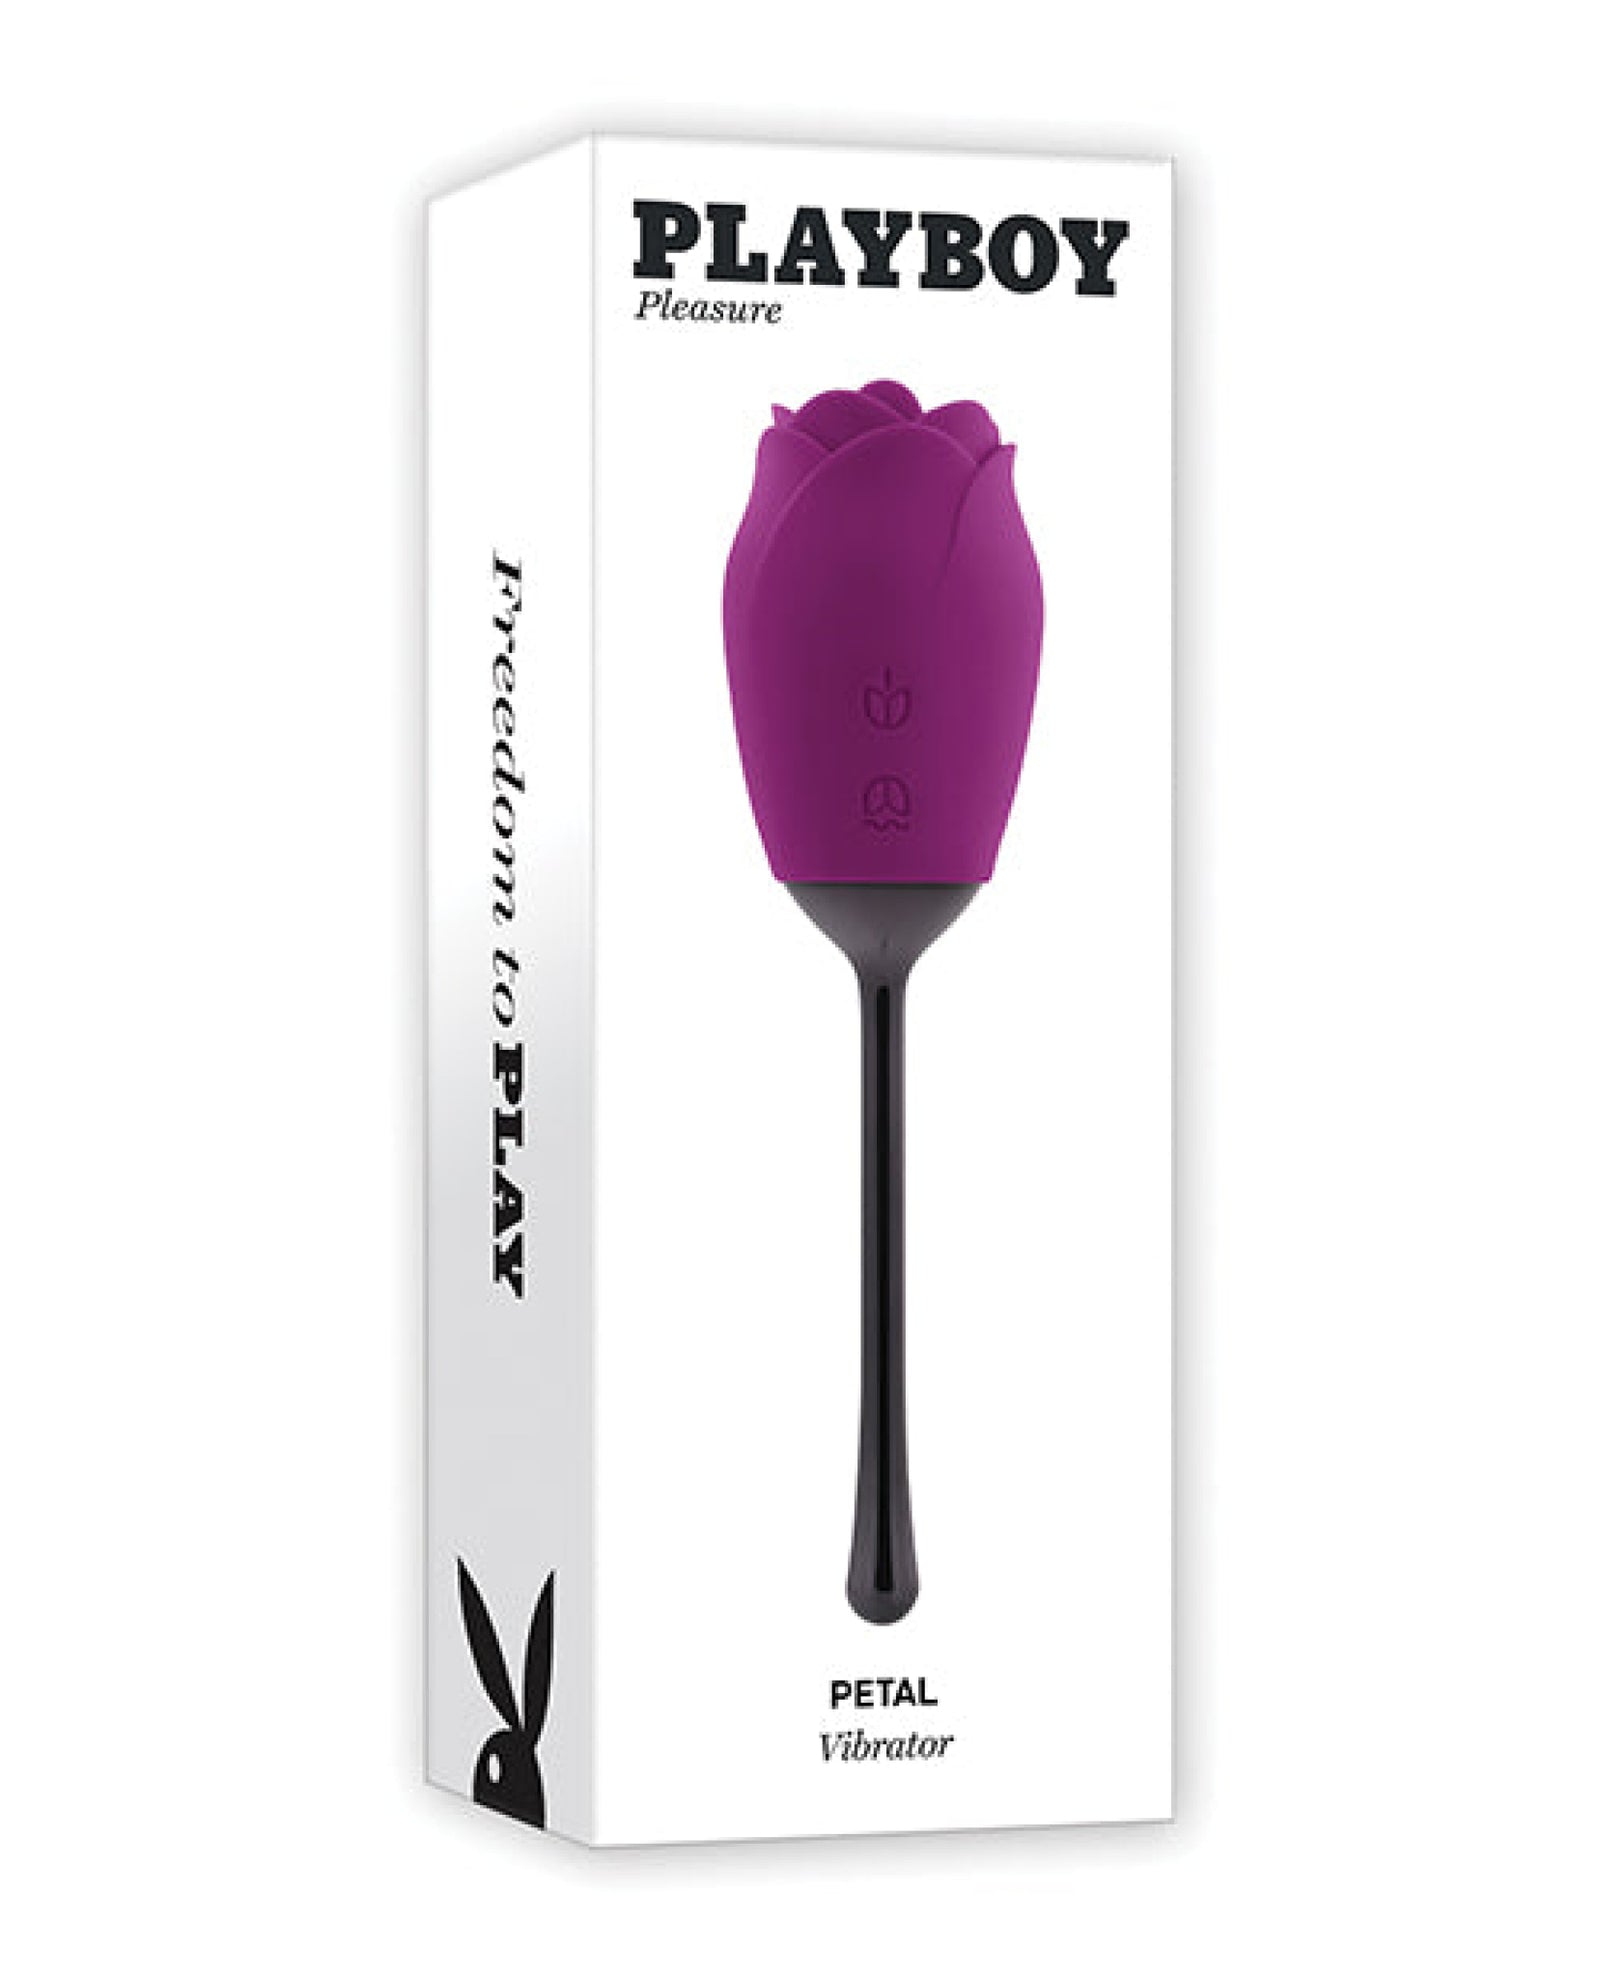 Playboy Pleasure Petal Vibrator - Wild Aster Playboy